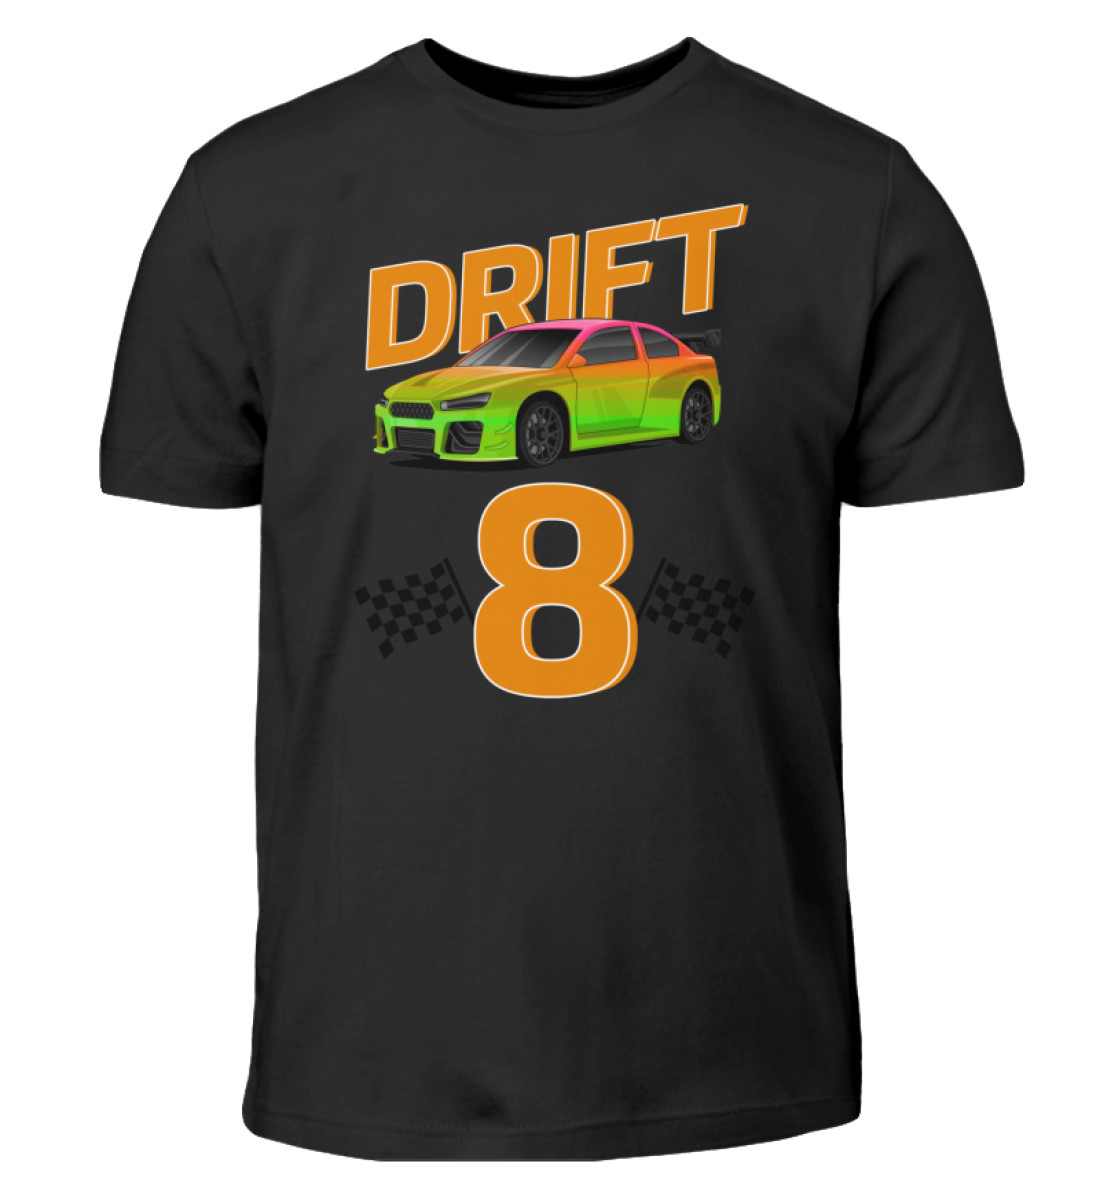 DR!FT-8 - Kinder T-Shirt-16